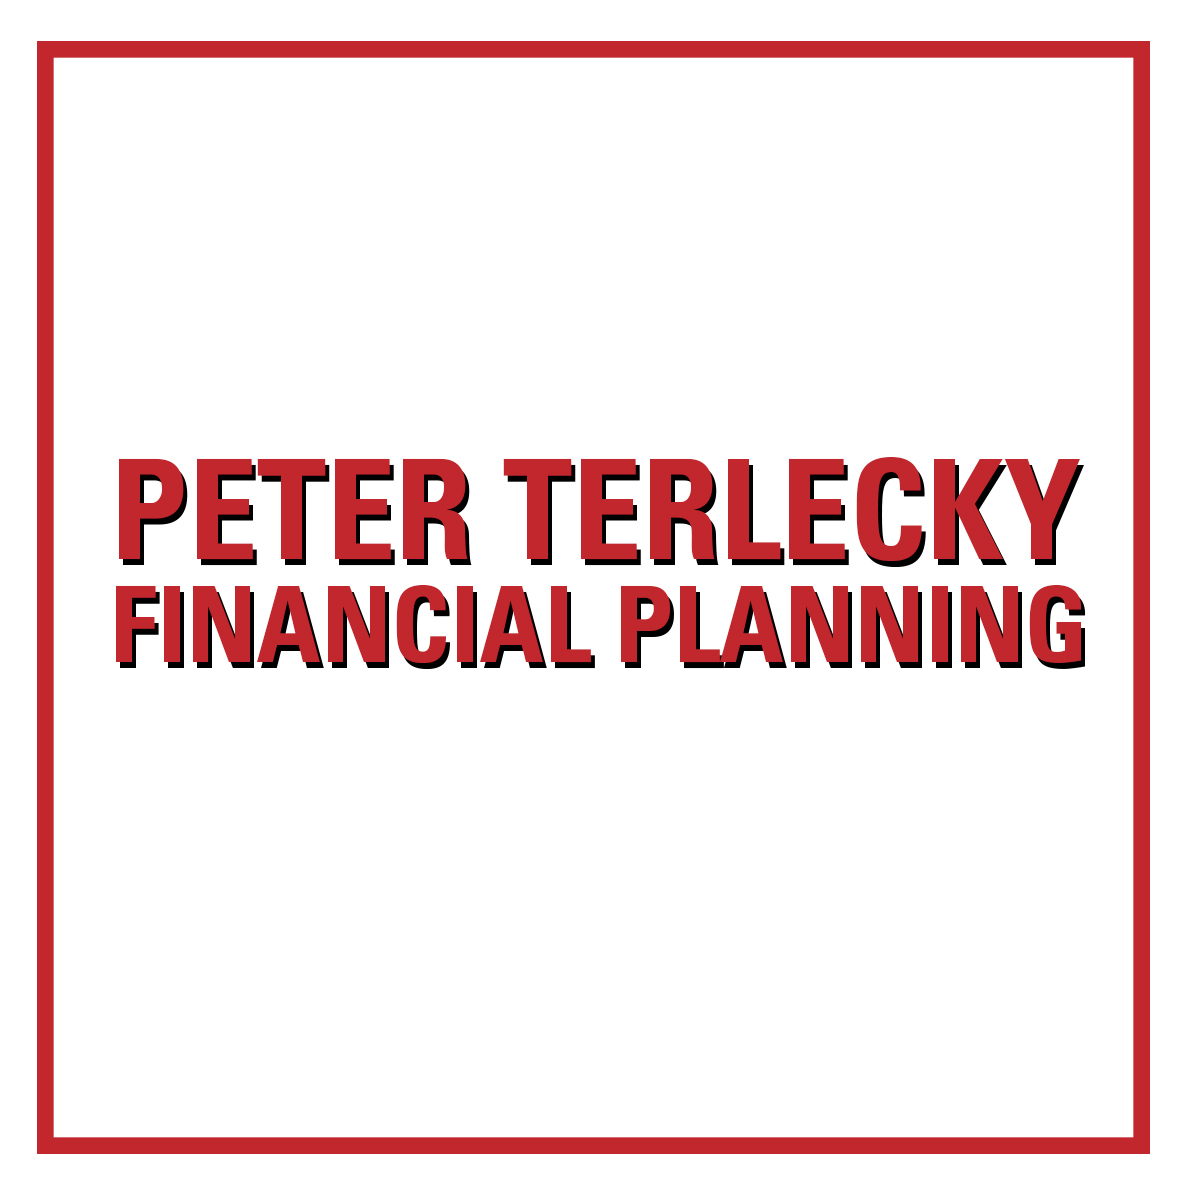 Peter Terlecky Financial Planning